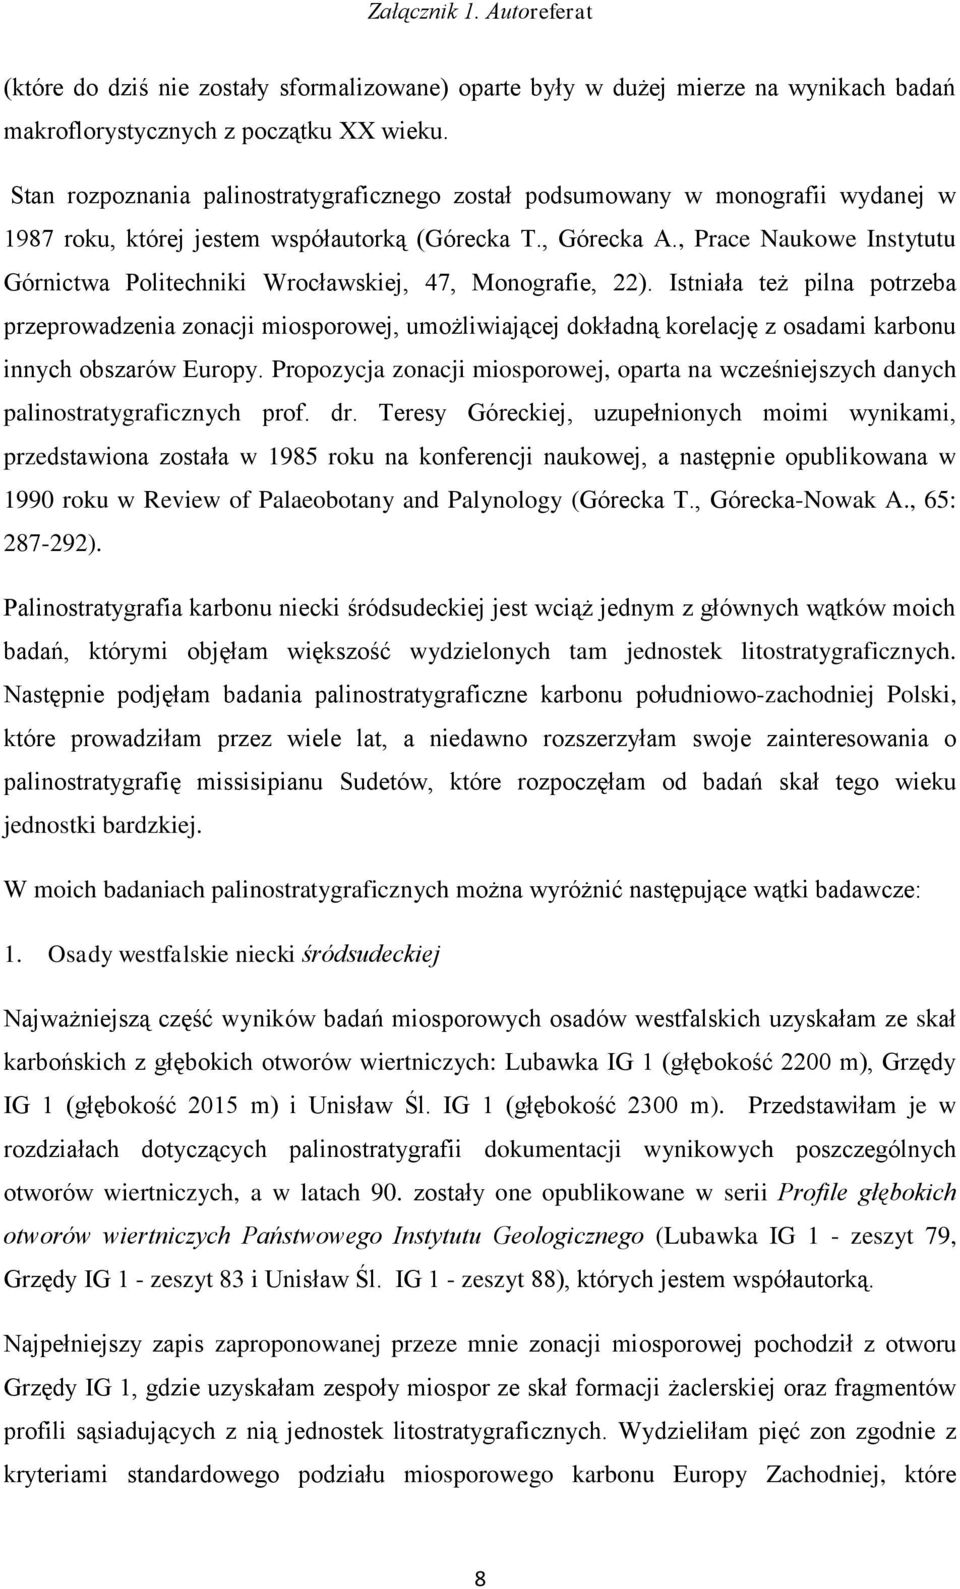 , Prace Naukowe Instytutu Górnictwa Politechniki Wrocławskiej, 47, Monografie, 22).